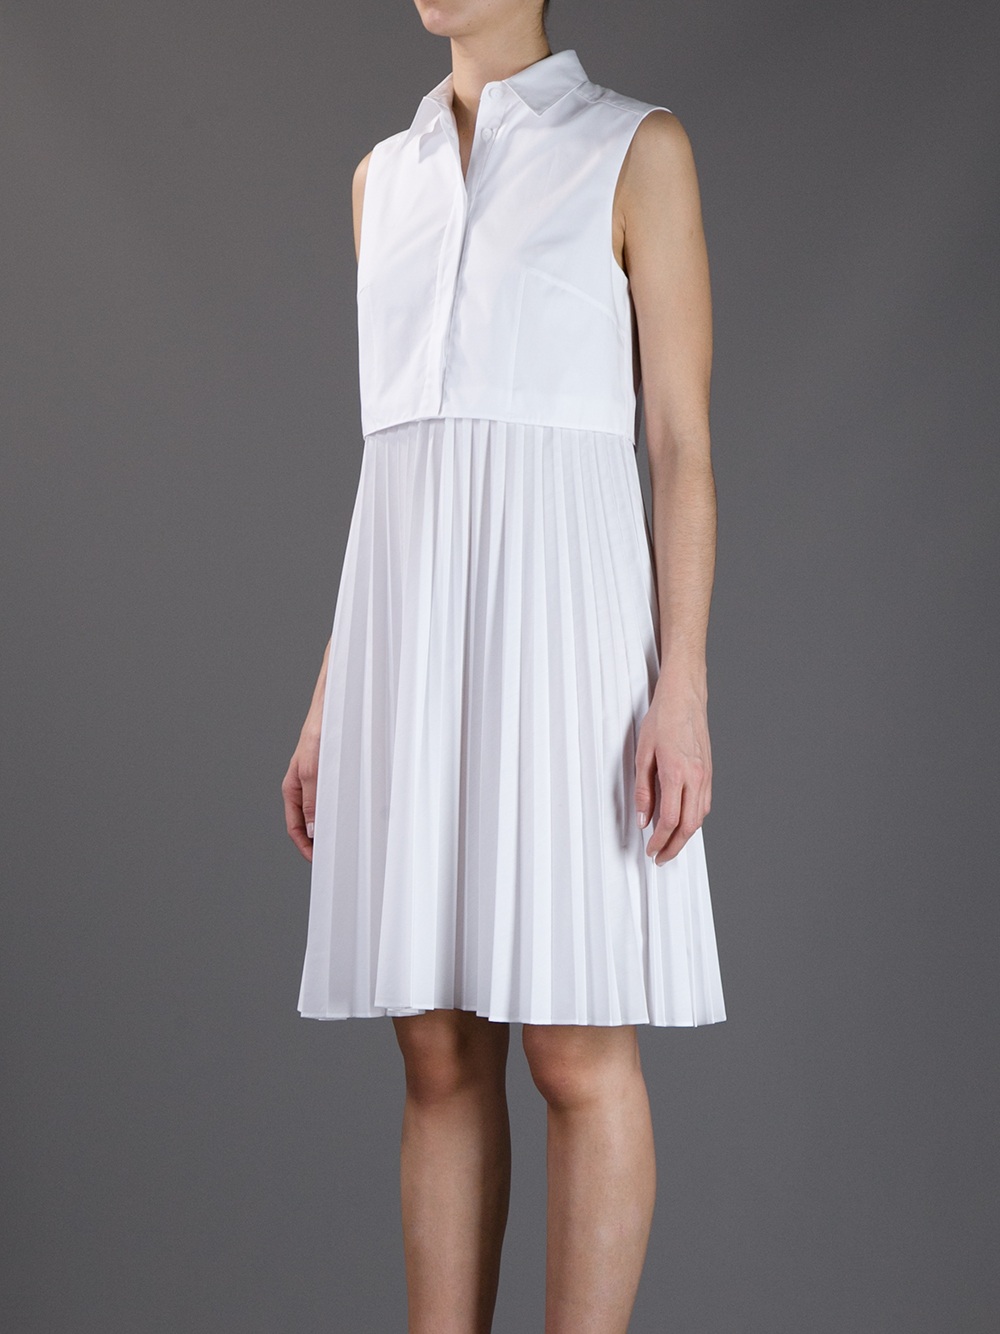 Christopher Kane Pleated Skirt Shirt Dress in White | Lyst